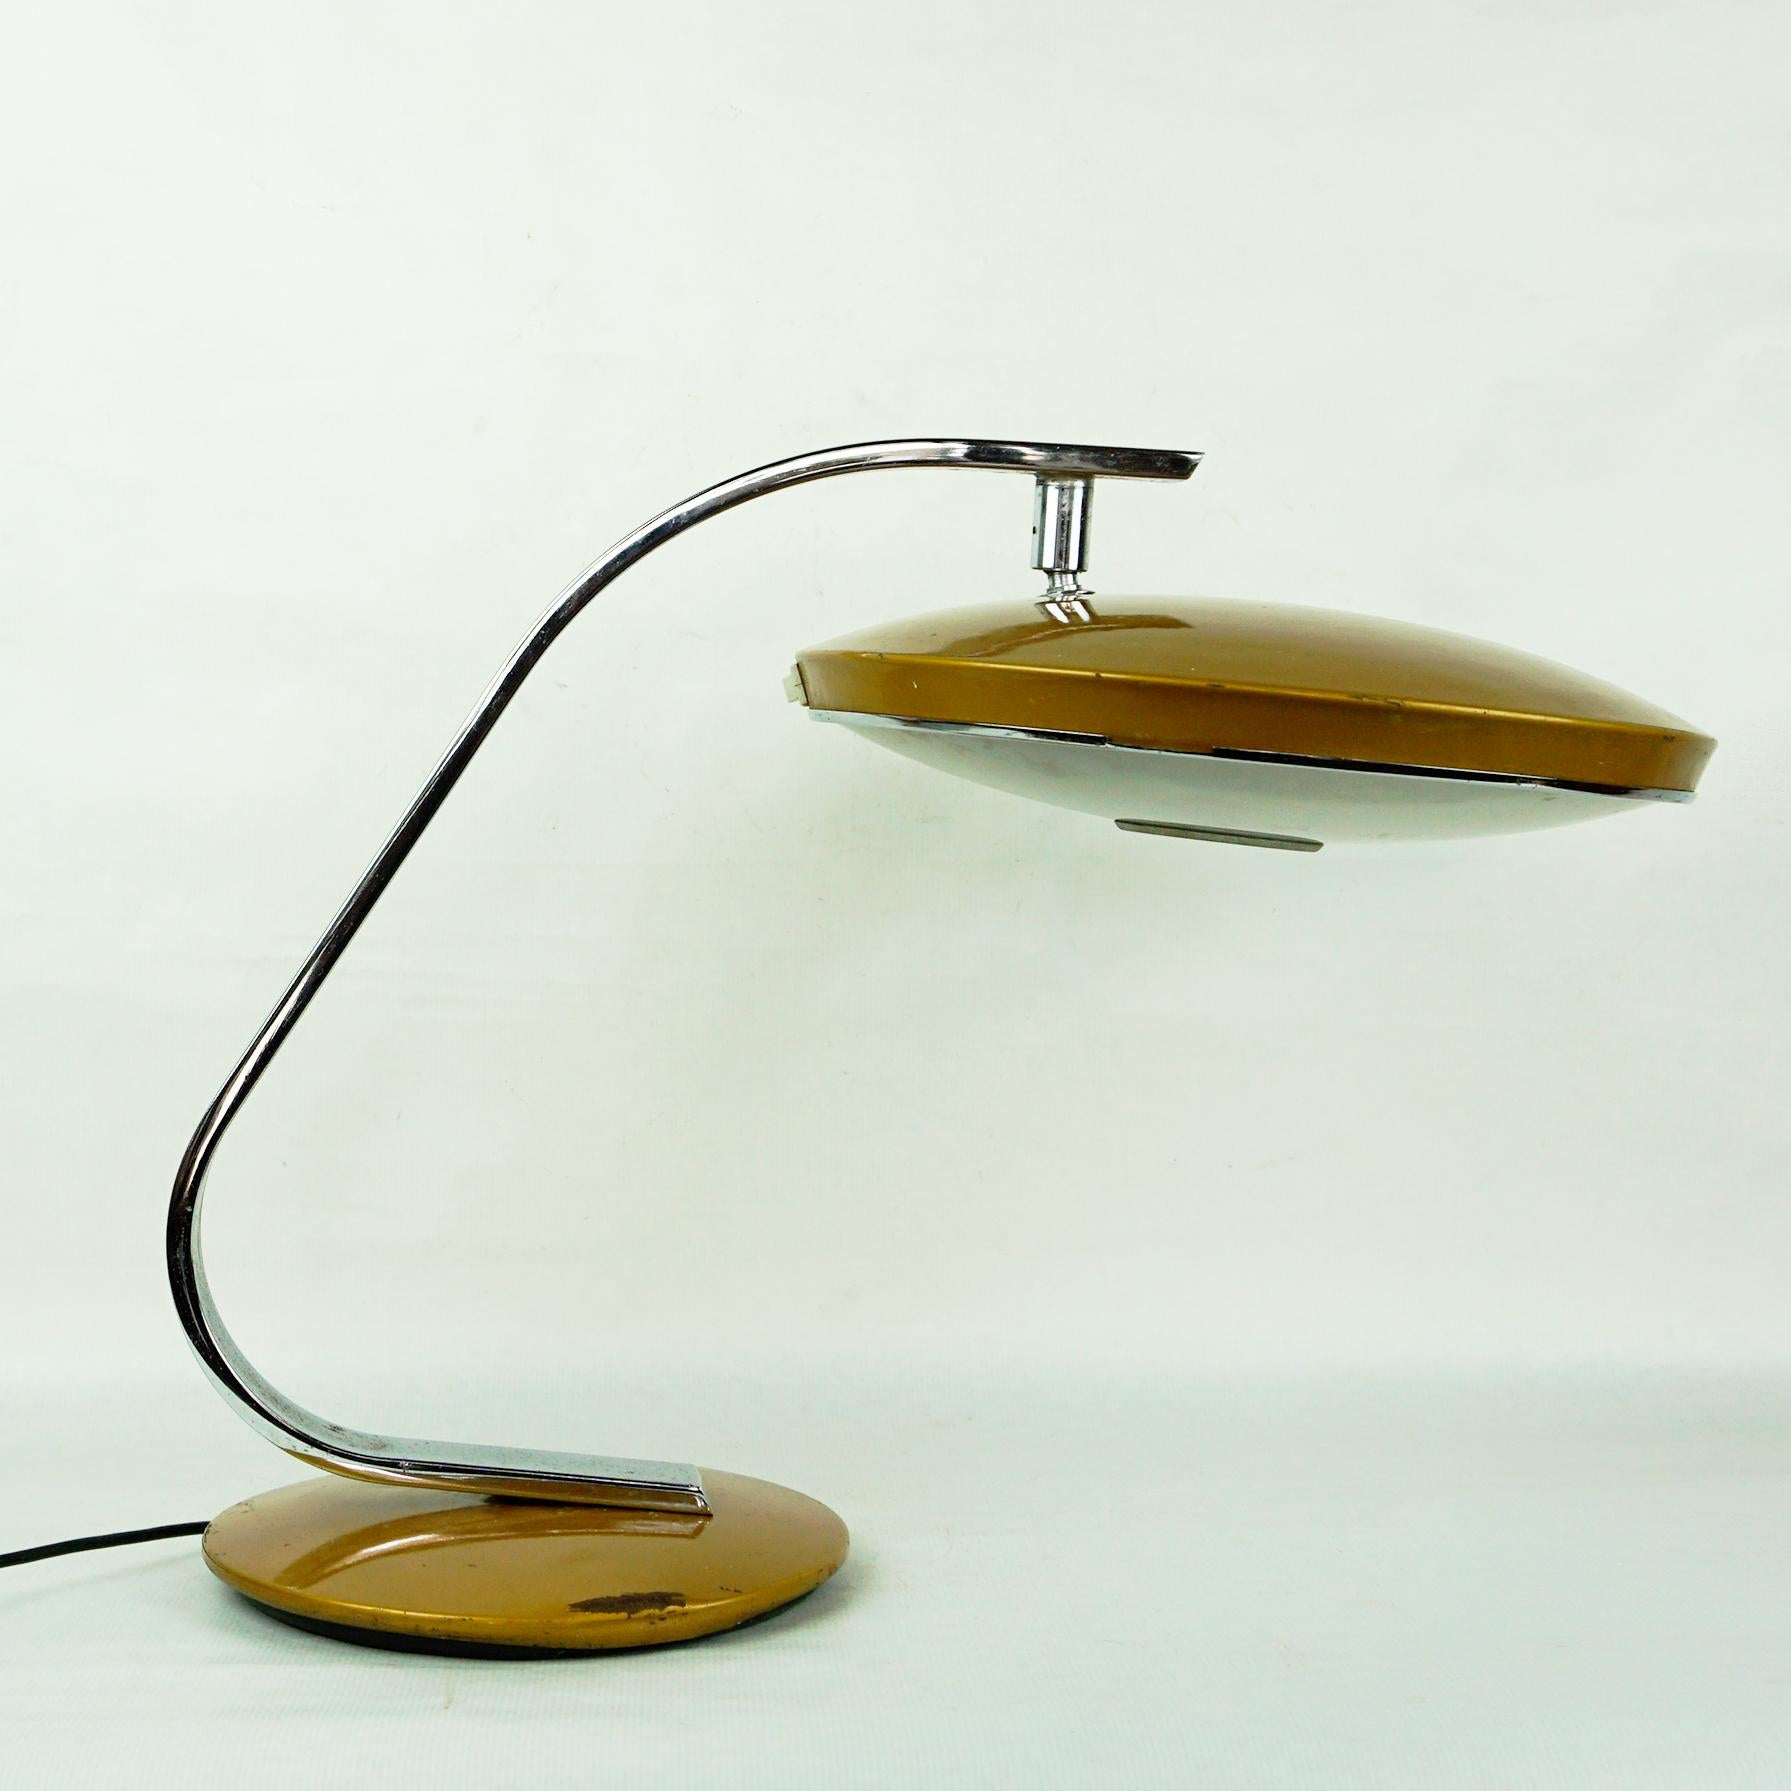 Drehbare, goldbraun emaillierte Metall-Tischleuchte des spanischen Leuchtenherstellers Fase Madrid entworfen  in den 1960er Jahren.
Sie verfügt über einen verstellbaren, scheibenförmigen Schirm mit Milchglasdiffusor, Kugelgelenk, mit 2 Fassungen für